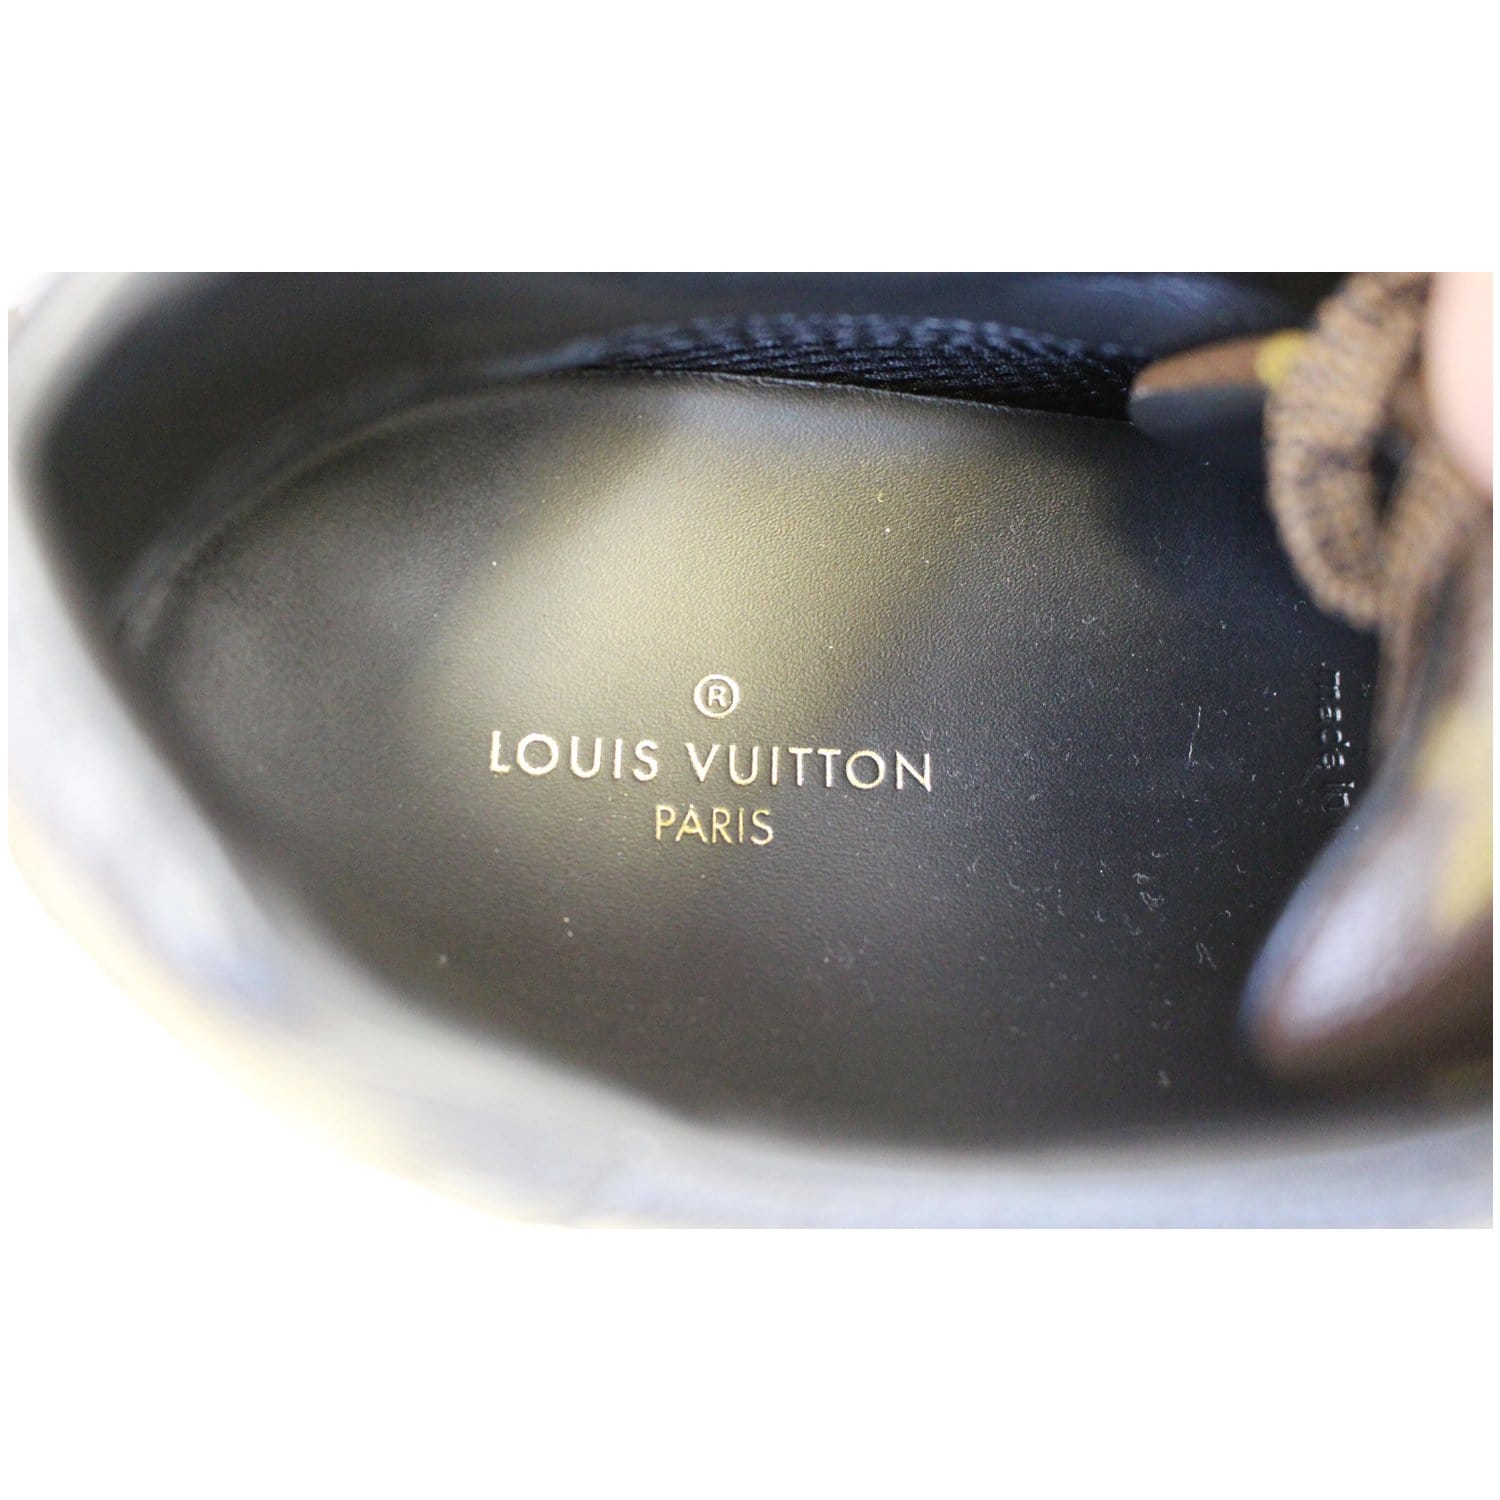 Louis Vuitton, tan colored sneakers - Unique Designer Pieces